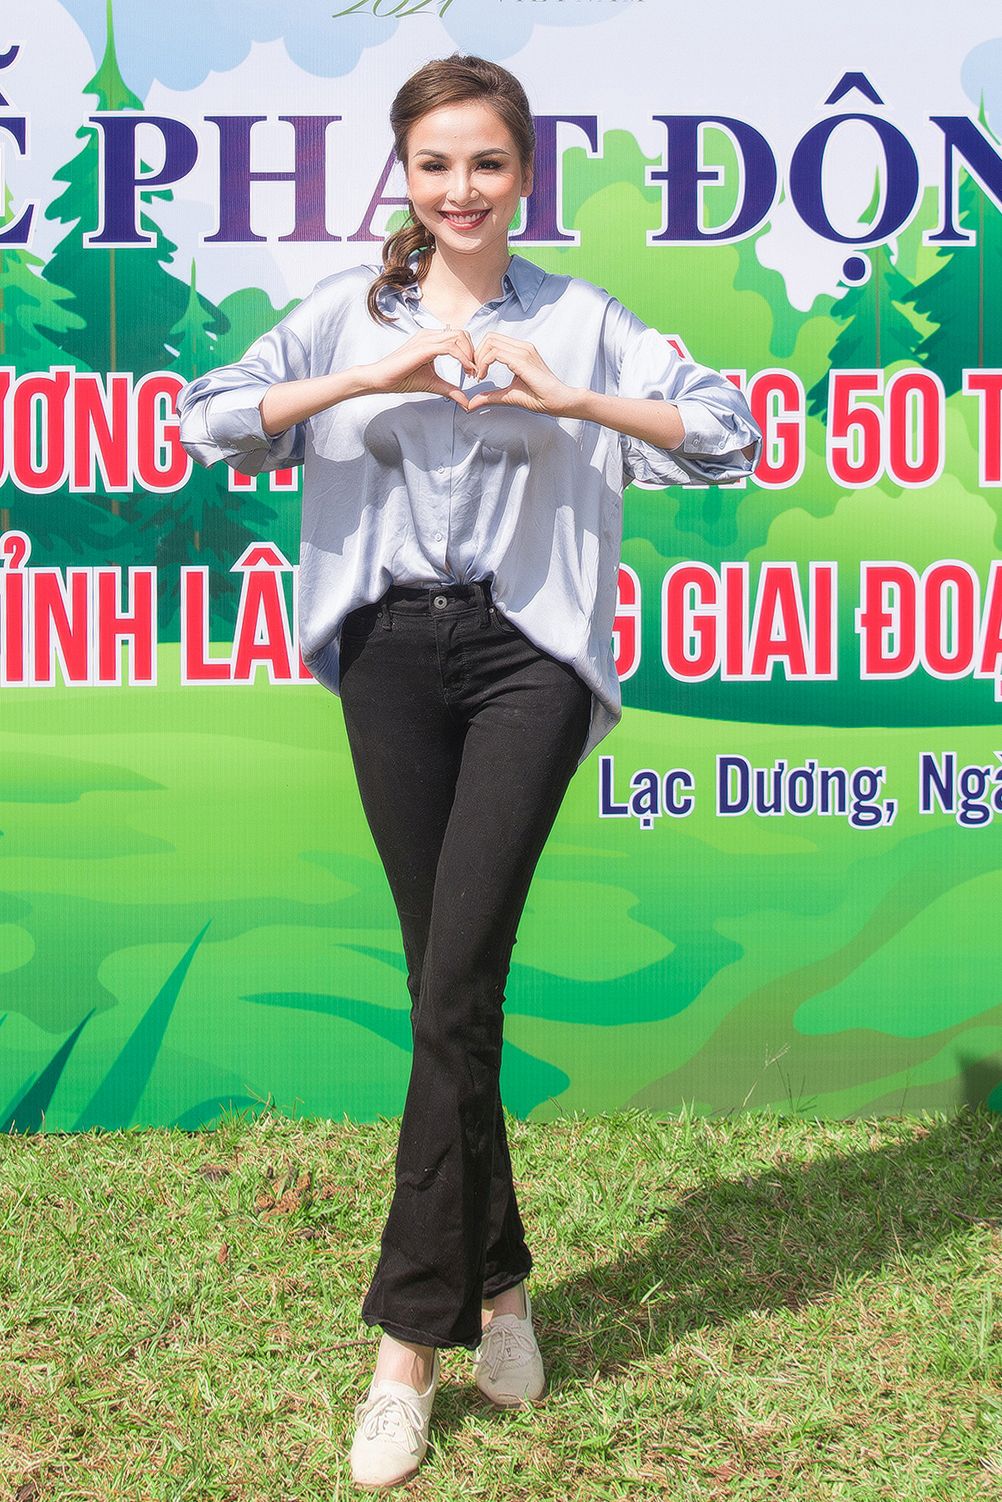 Hoa hậu Phương Khánh ăn vận giản dị đi trồng cây xanh - Ảnh 9.